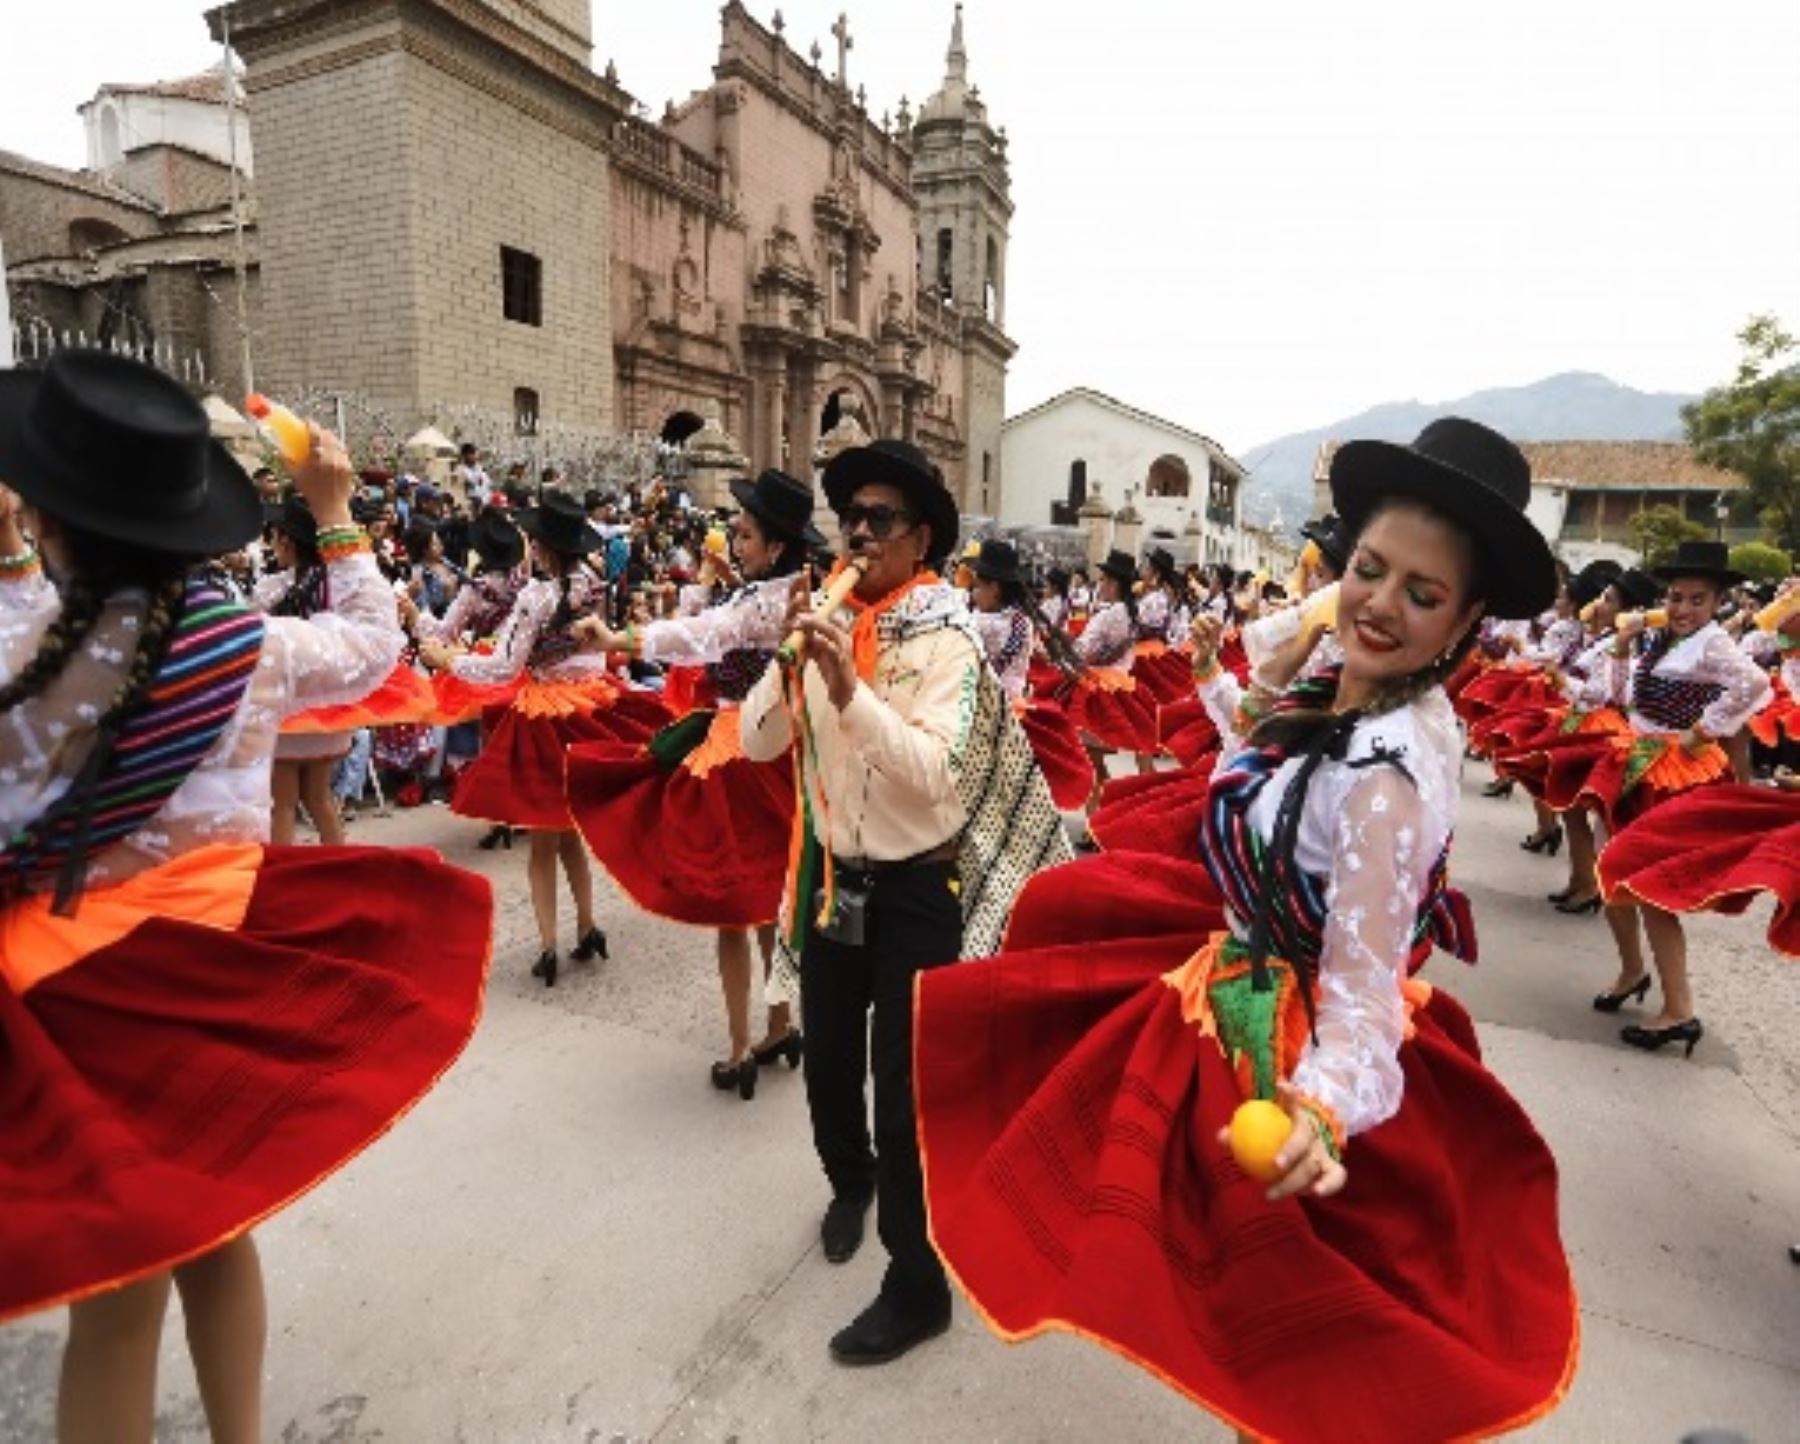 Turistas nacionales y extranjeros disfrutan de un colorido espectáculo que derrocha ritmo y alegría.